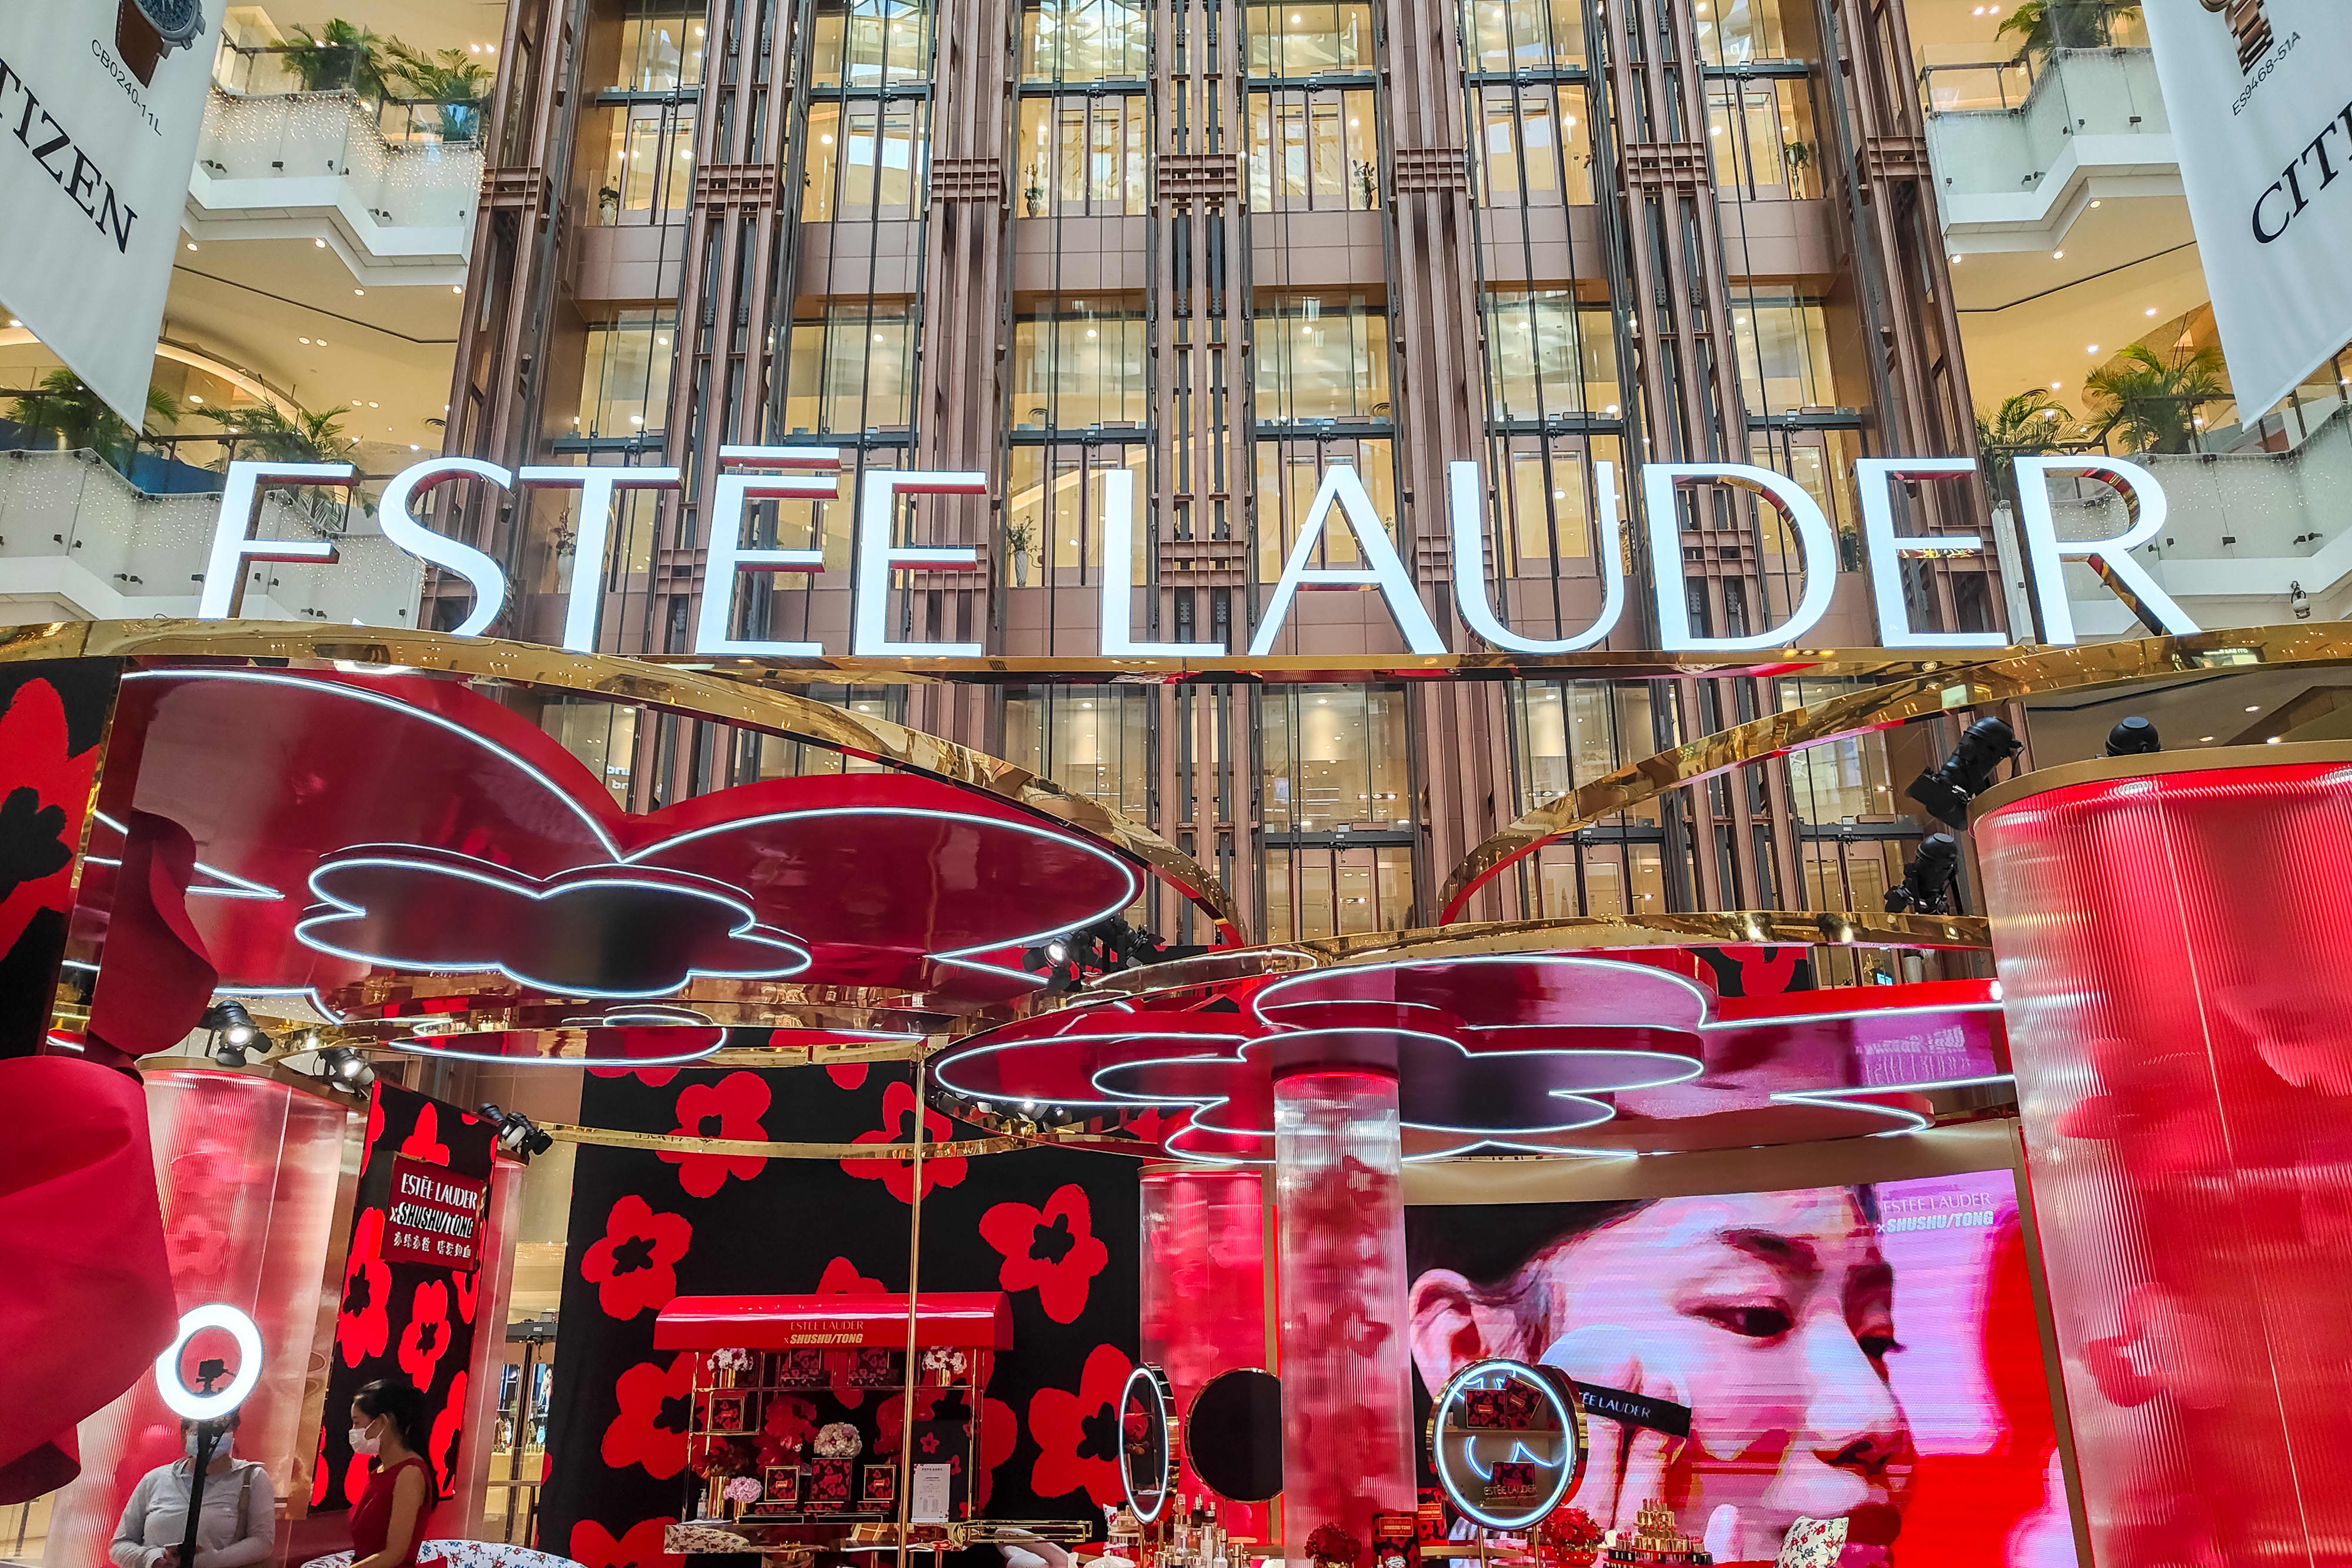 What is Estée Lauder's marketing strategy?